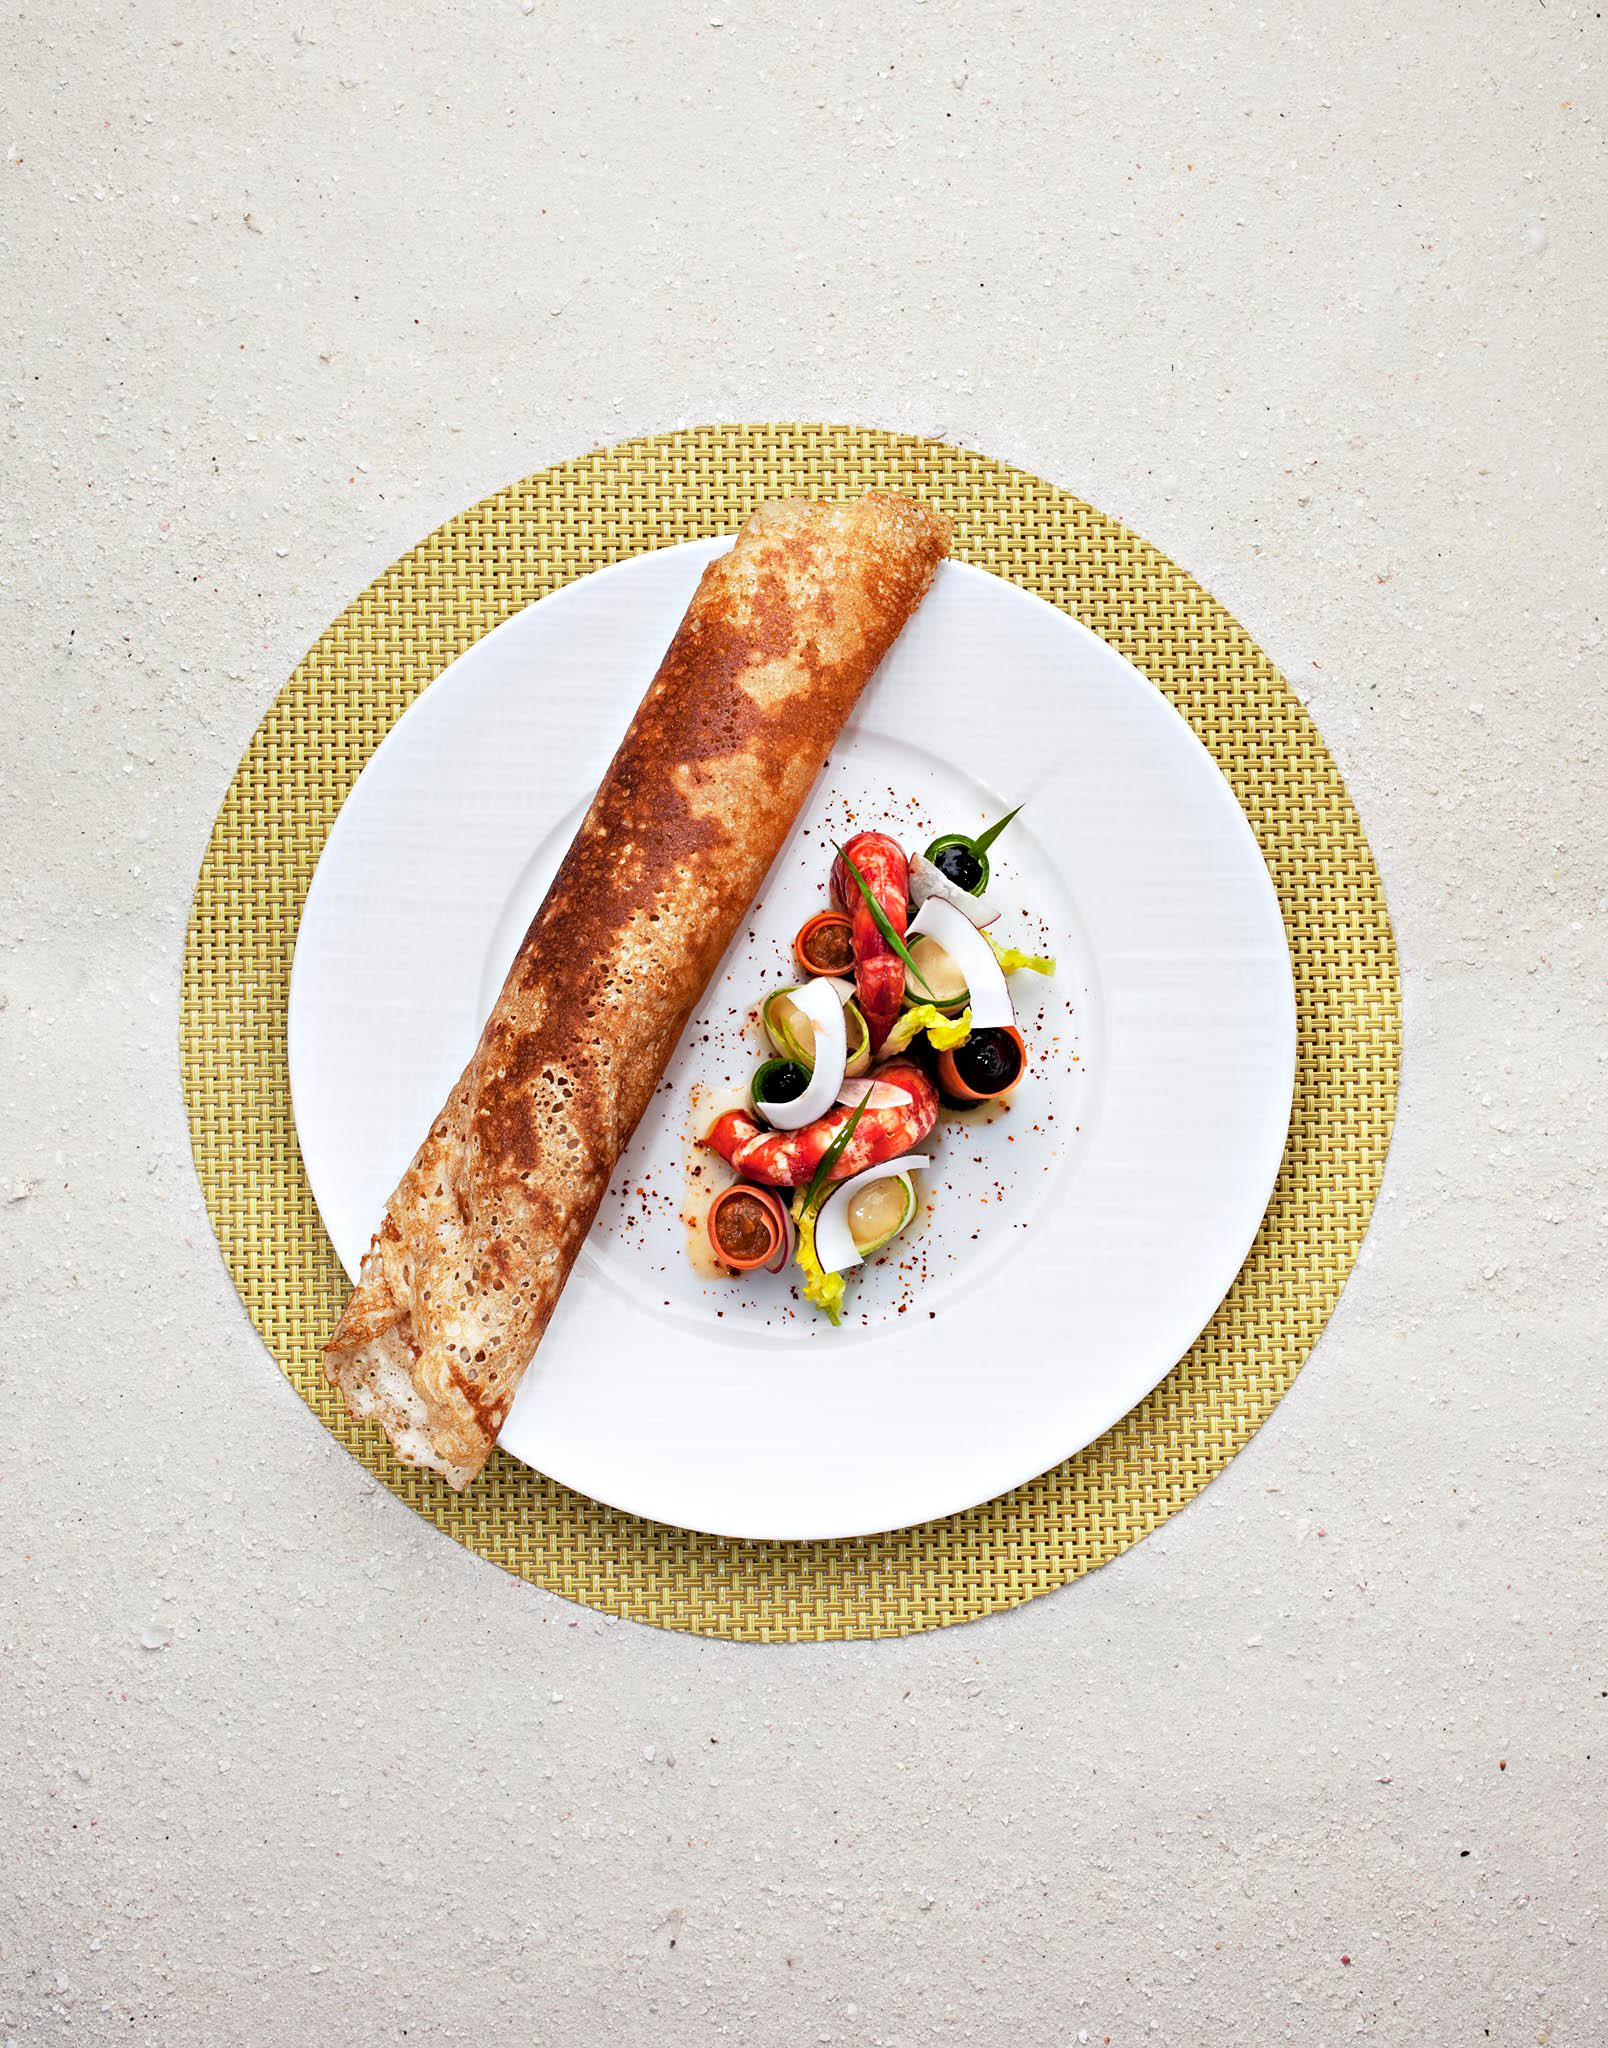 Cheval Blanc Randheli Resort – Noonu Atoll, Maldives – Culinary Dining Arts